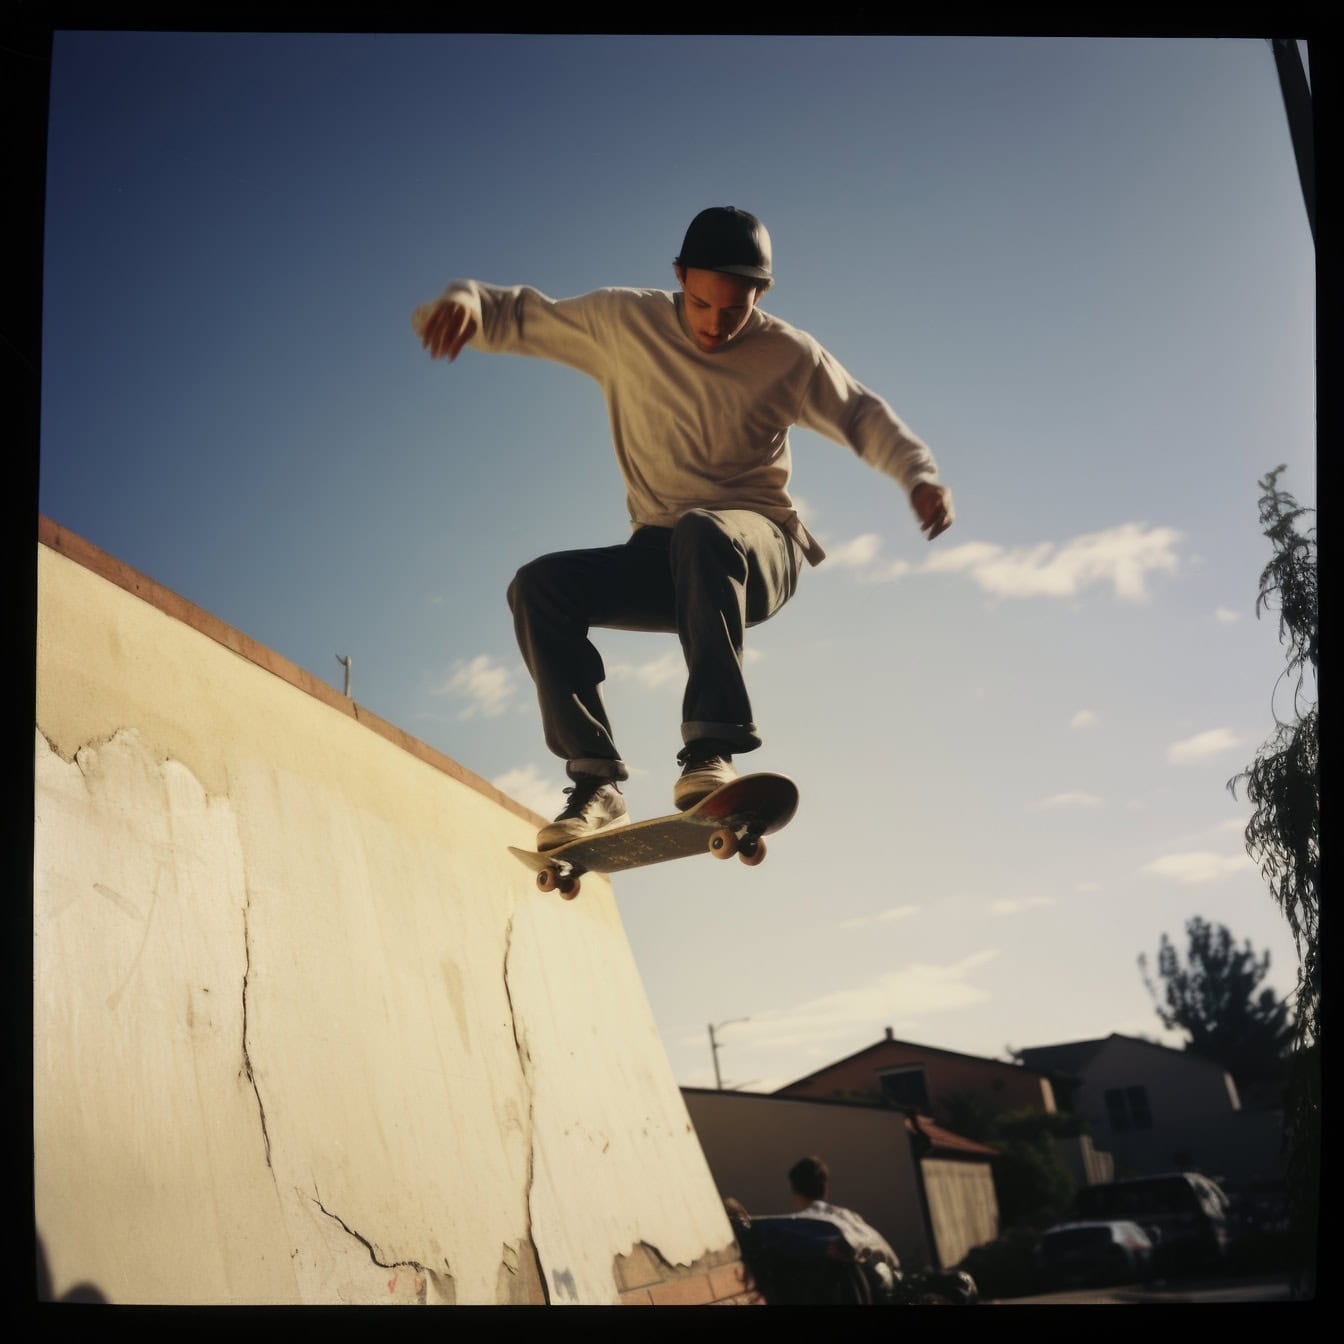 Vecchia foto polaroid di un giovane che salta da una rampa su uno skateboard come uno stuntman